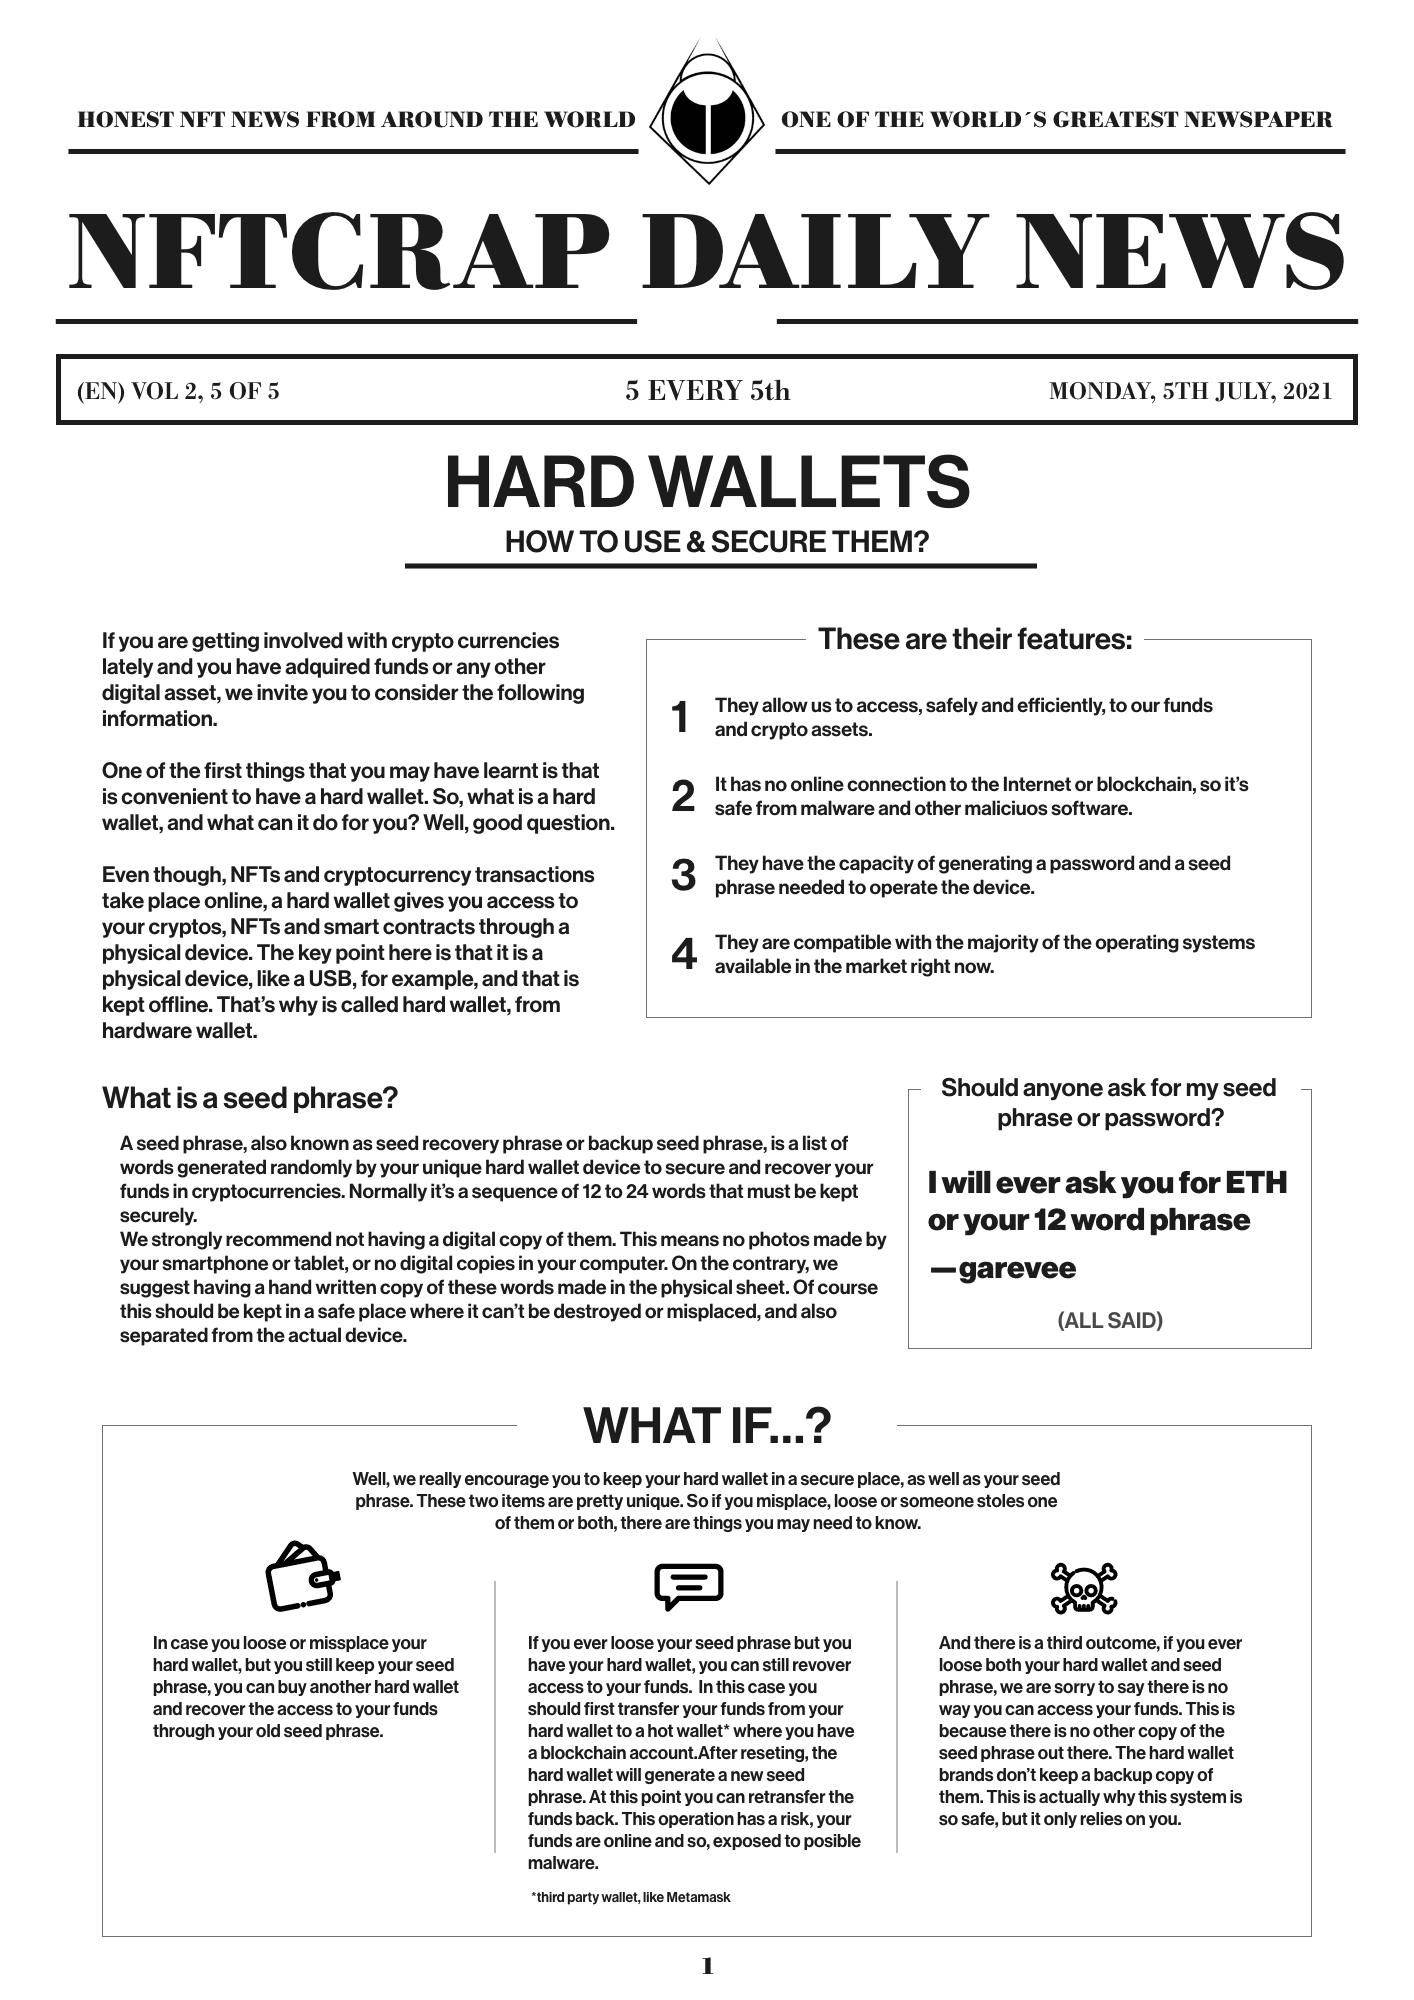 Hard Wallets (EN) #5/5